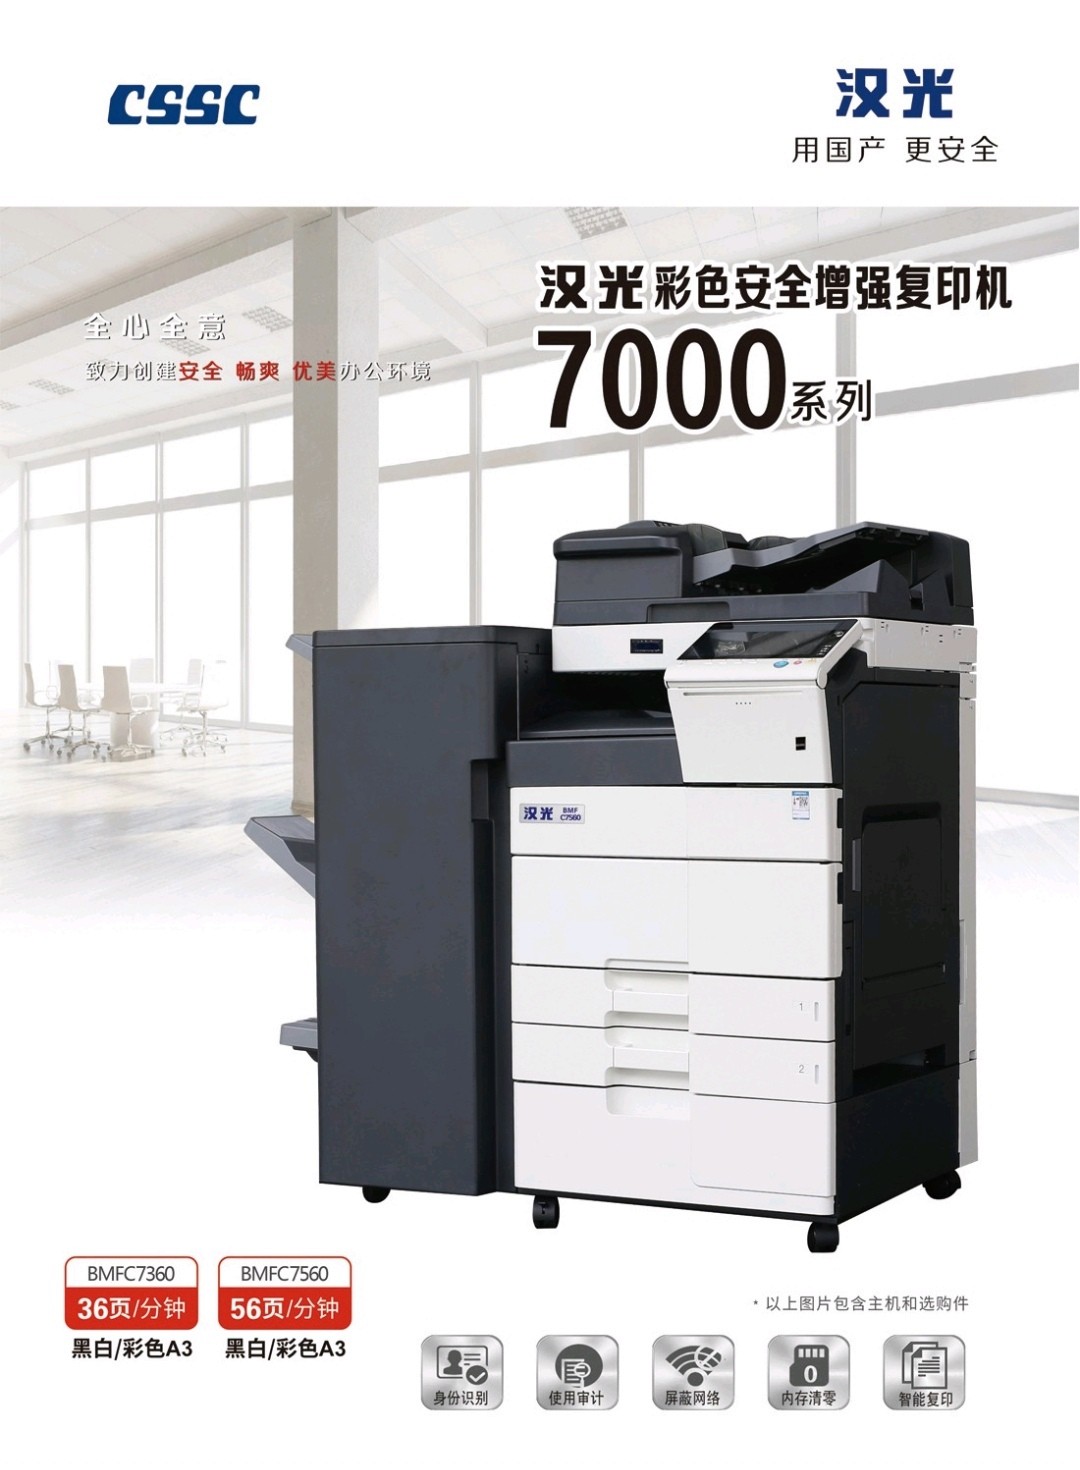 汉光（信创）C7560彩色复印机/安全保密机、国产品牌、内存清零、网络限制、屏蔽